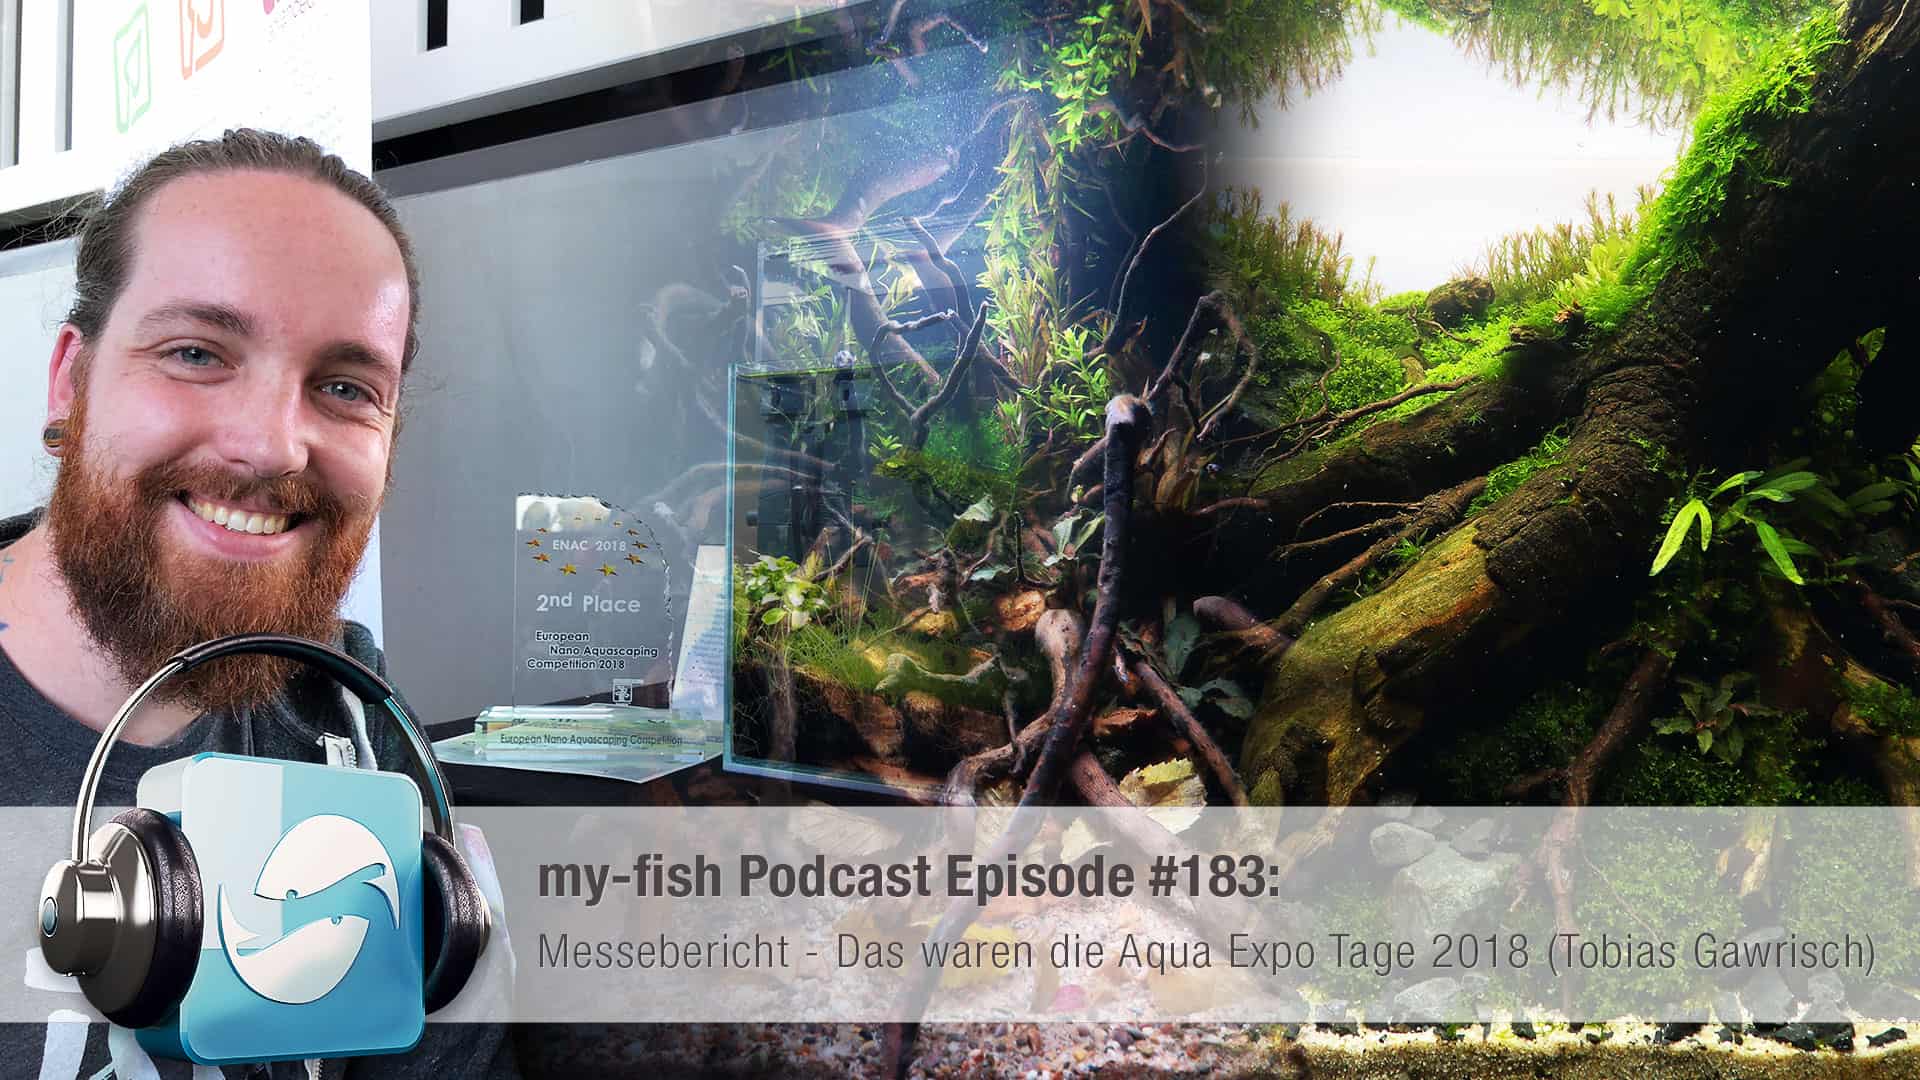 Podcast Episode #183: Messebericht - Das waren die Aqua Expo Tage 2018 (Tobias Gawrisch) 1